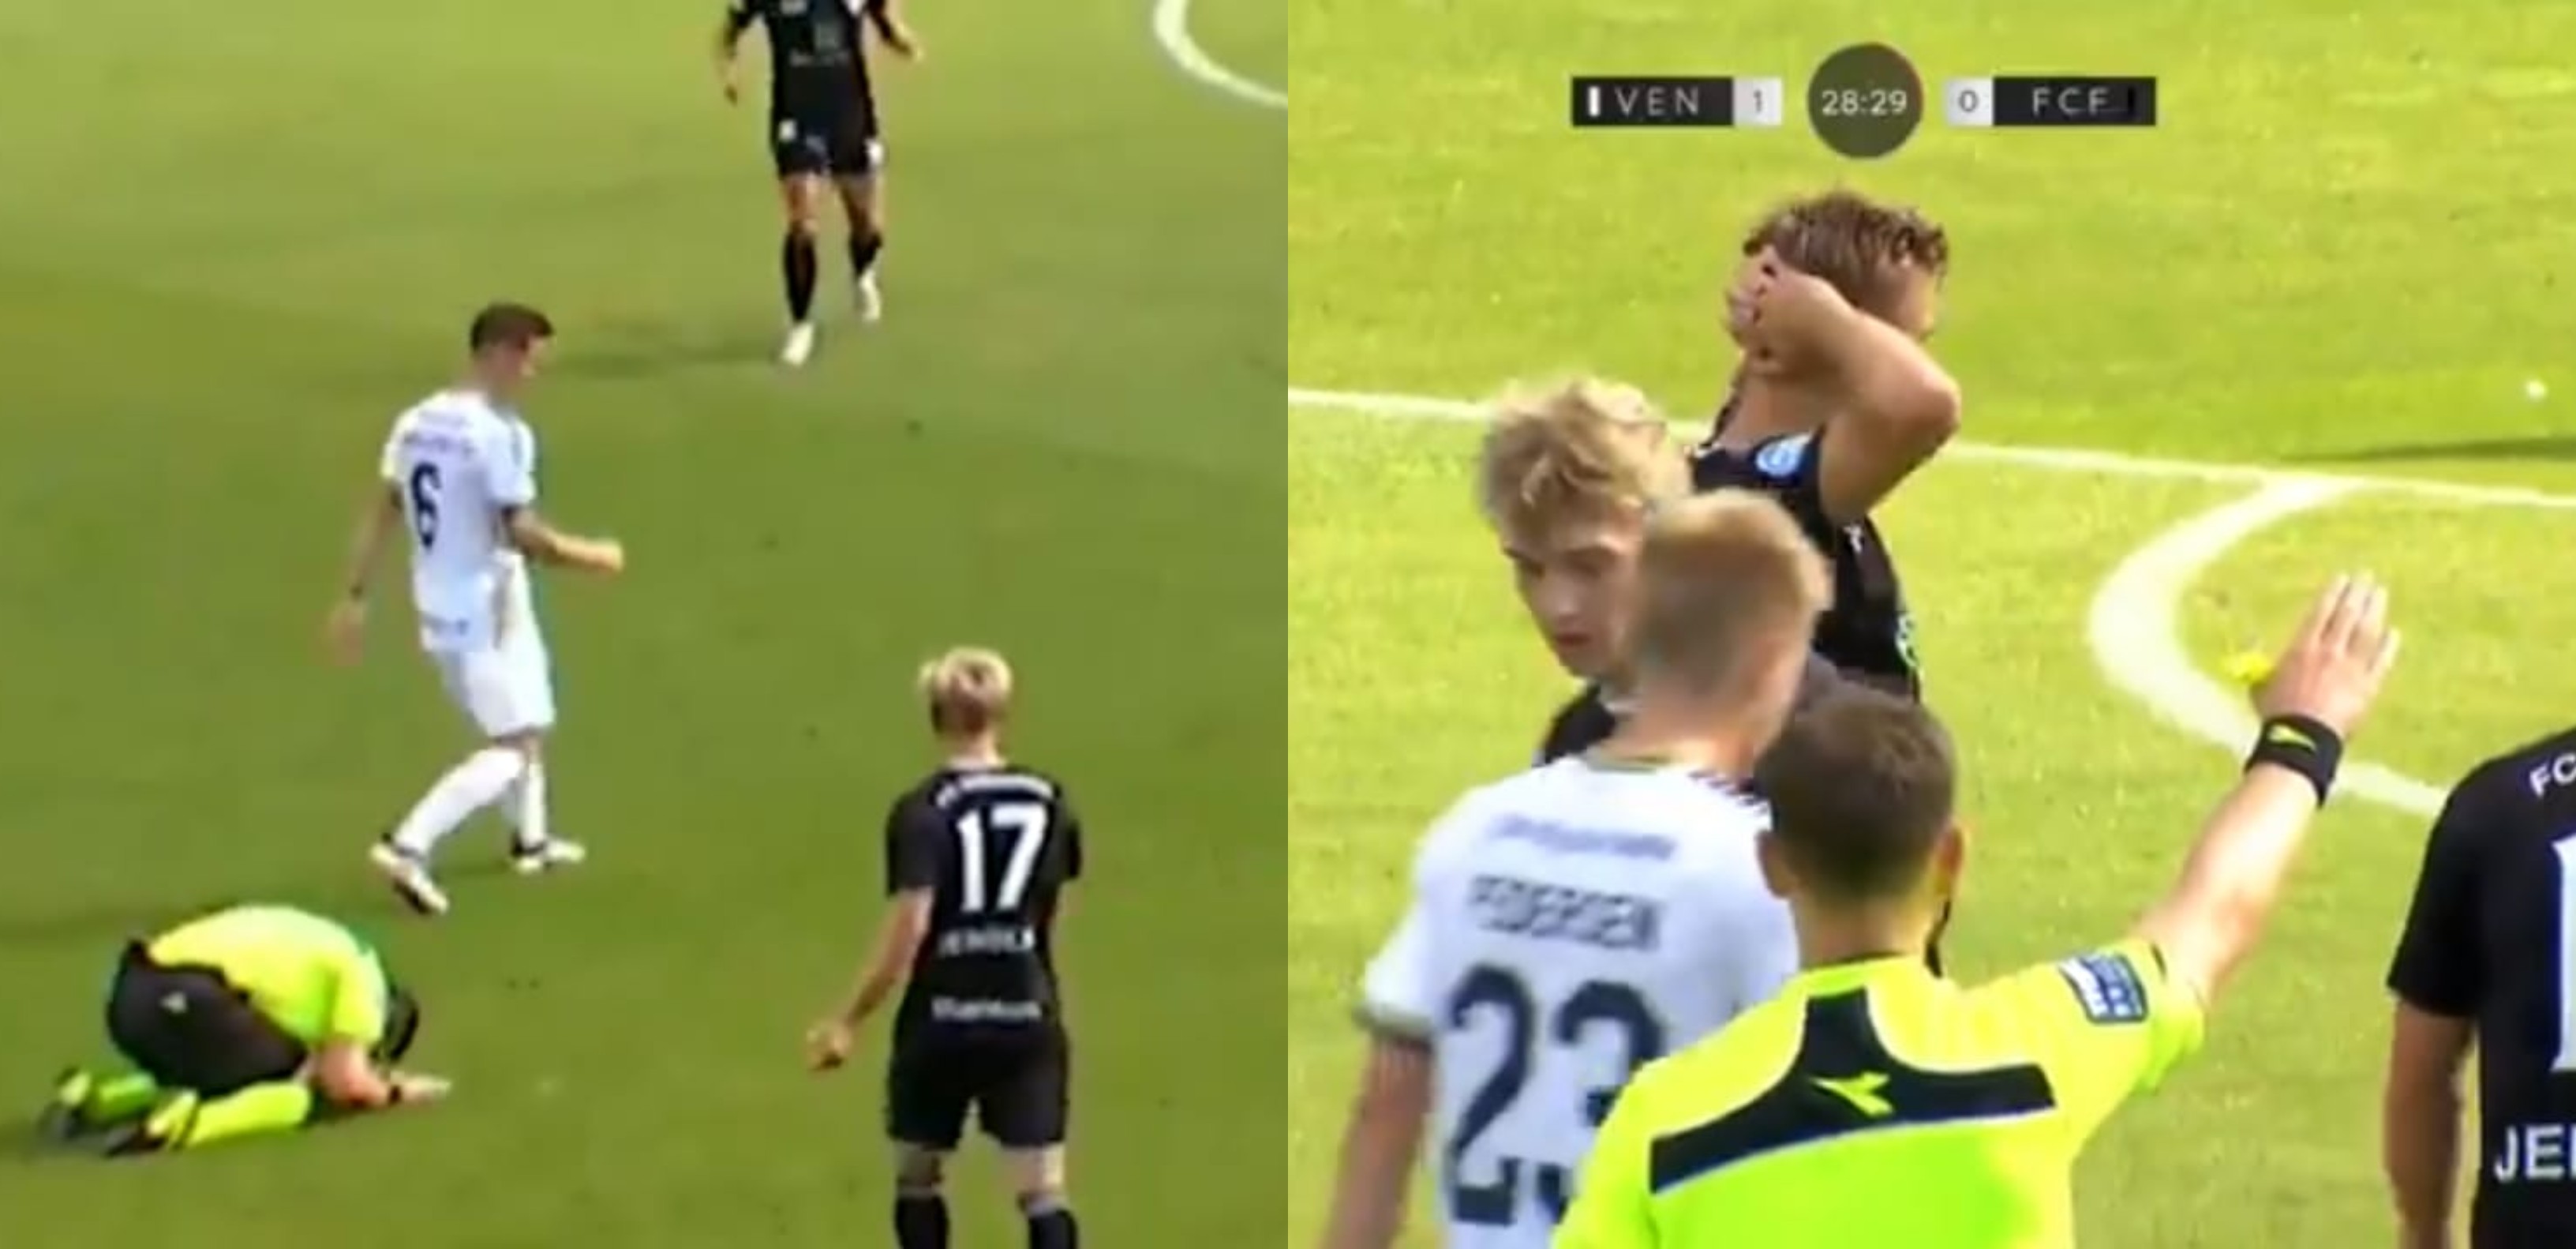 El árbitro Nils Heer se hincó al darse cuenta de su error. Algunos jugadores se le acercaron para consolarlo. Foto captura de pantalla. 